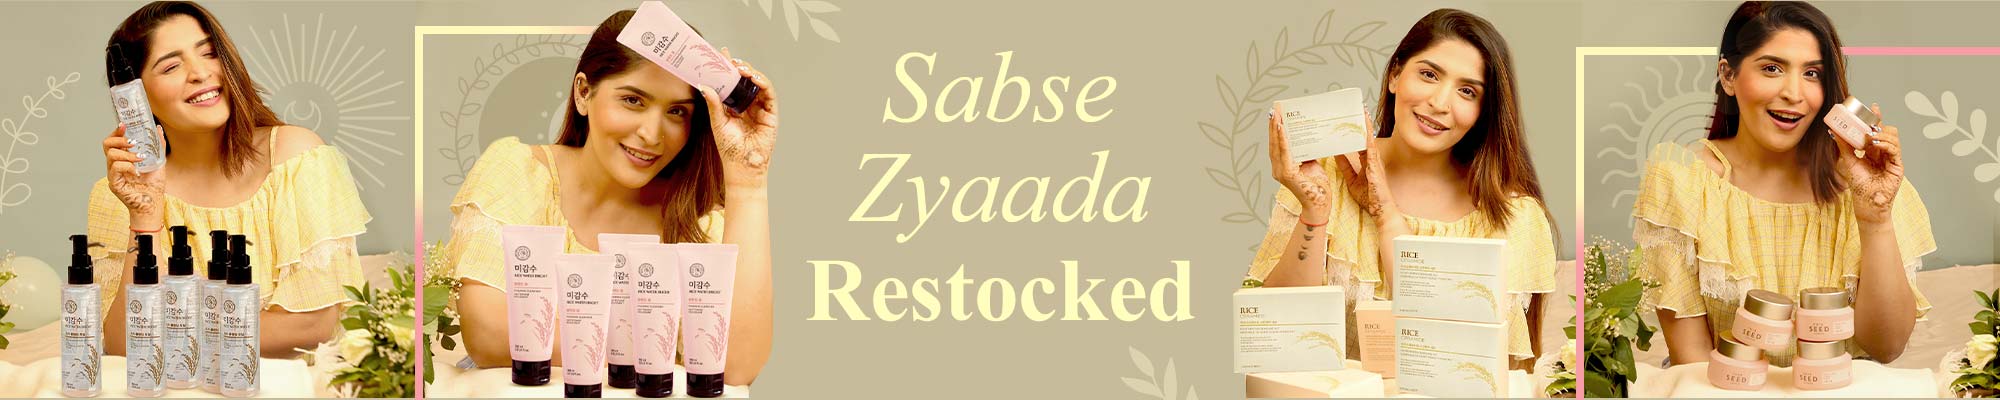 Sabse Jyaada Restocked